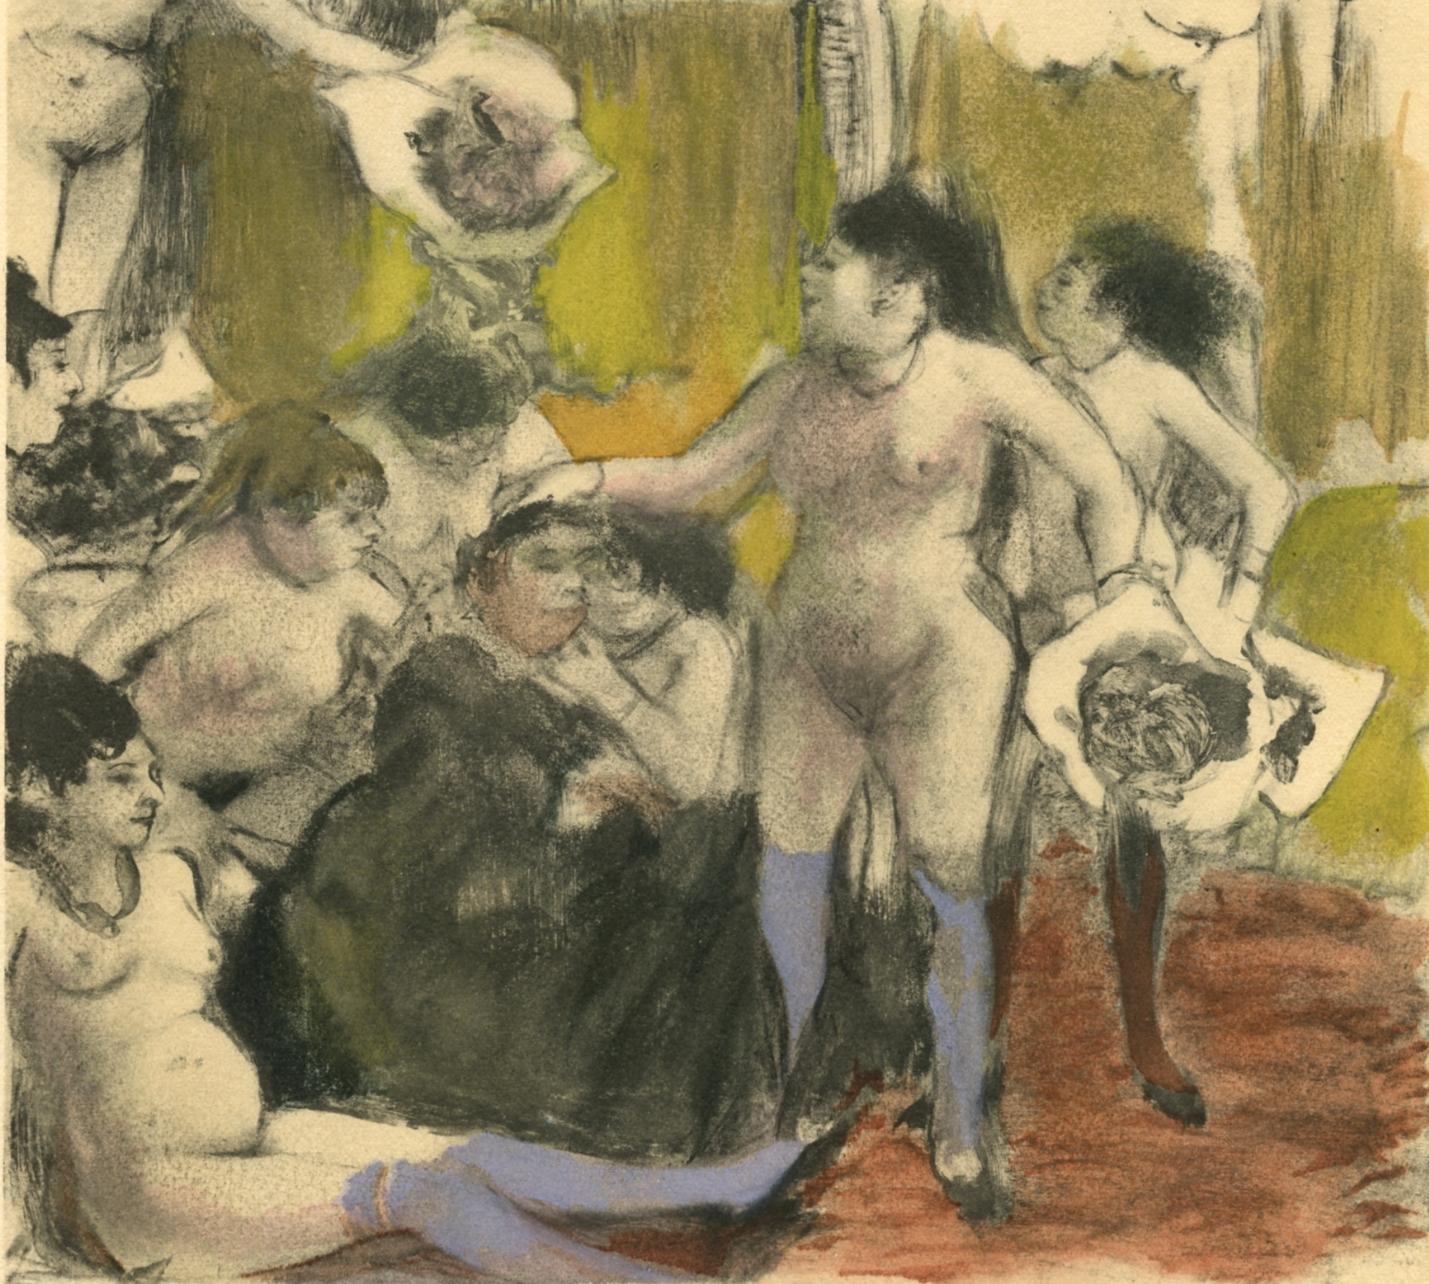 Degas, La Fete de la Patronne, Les Monotypes (after)